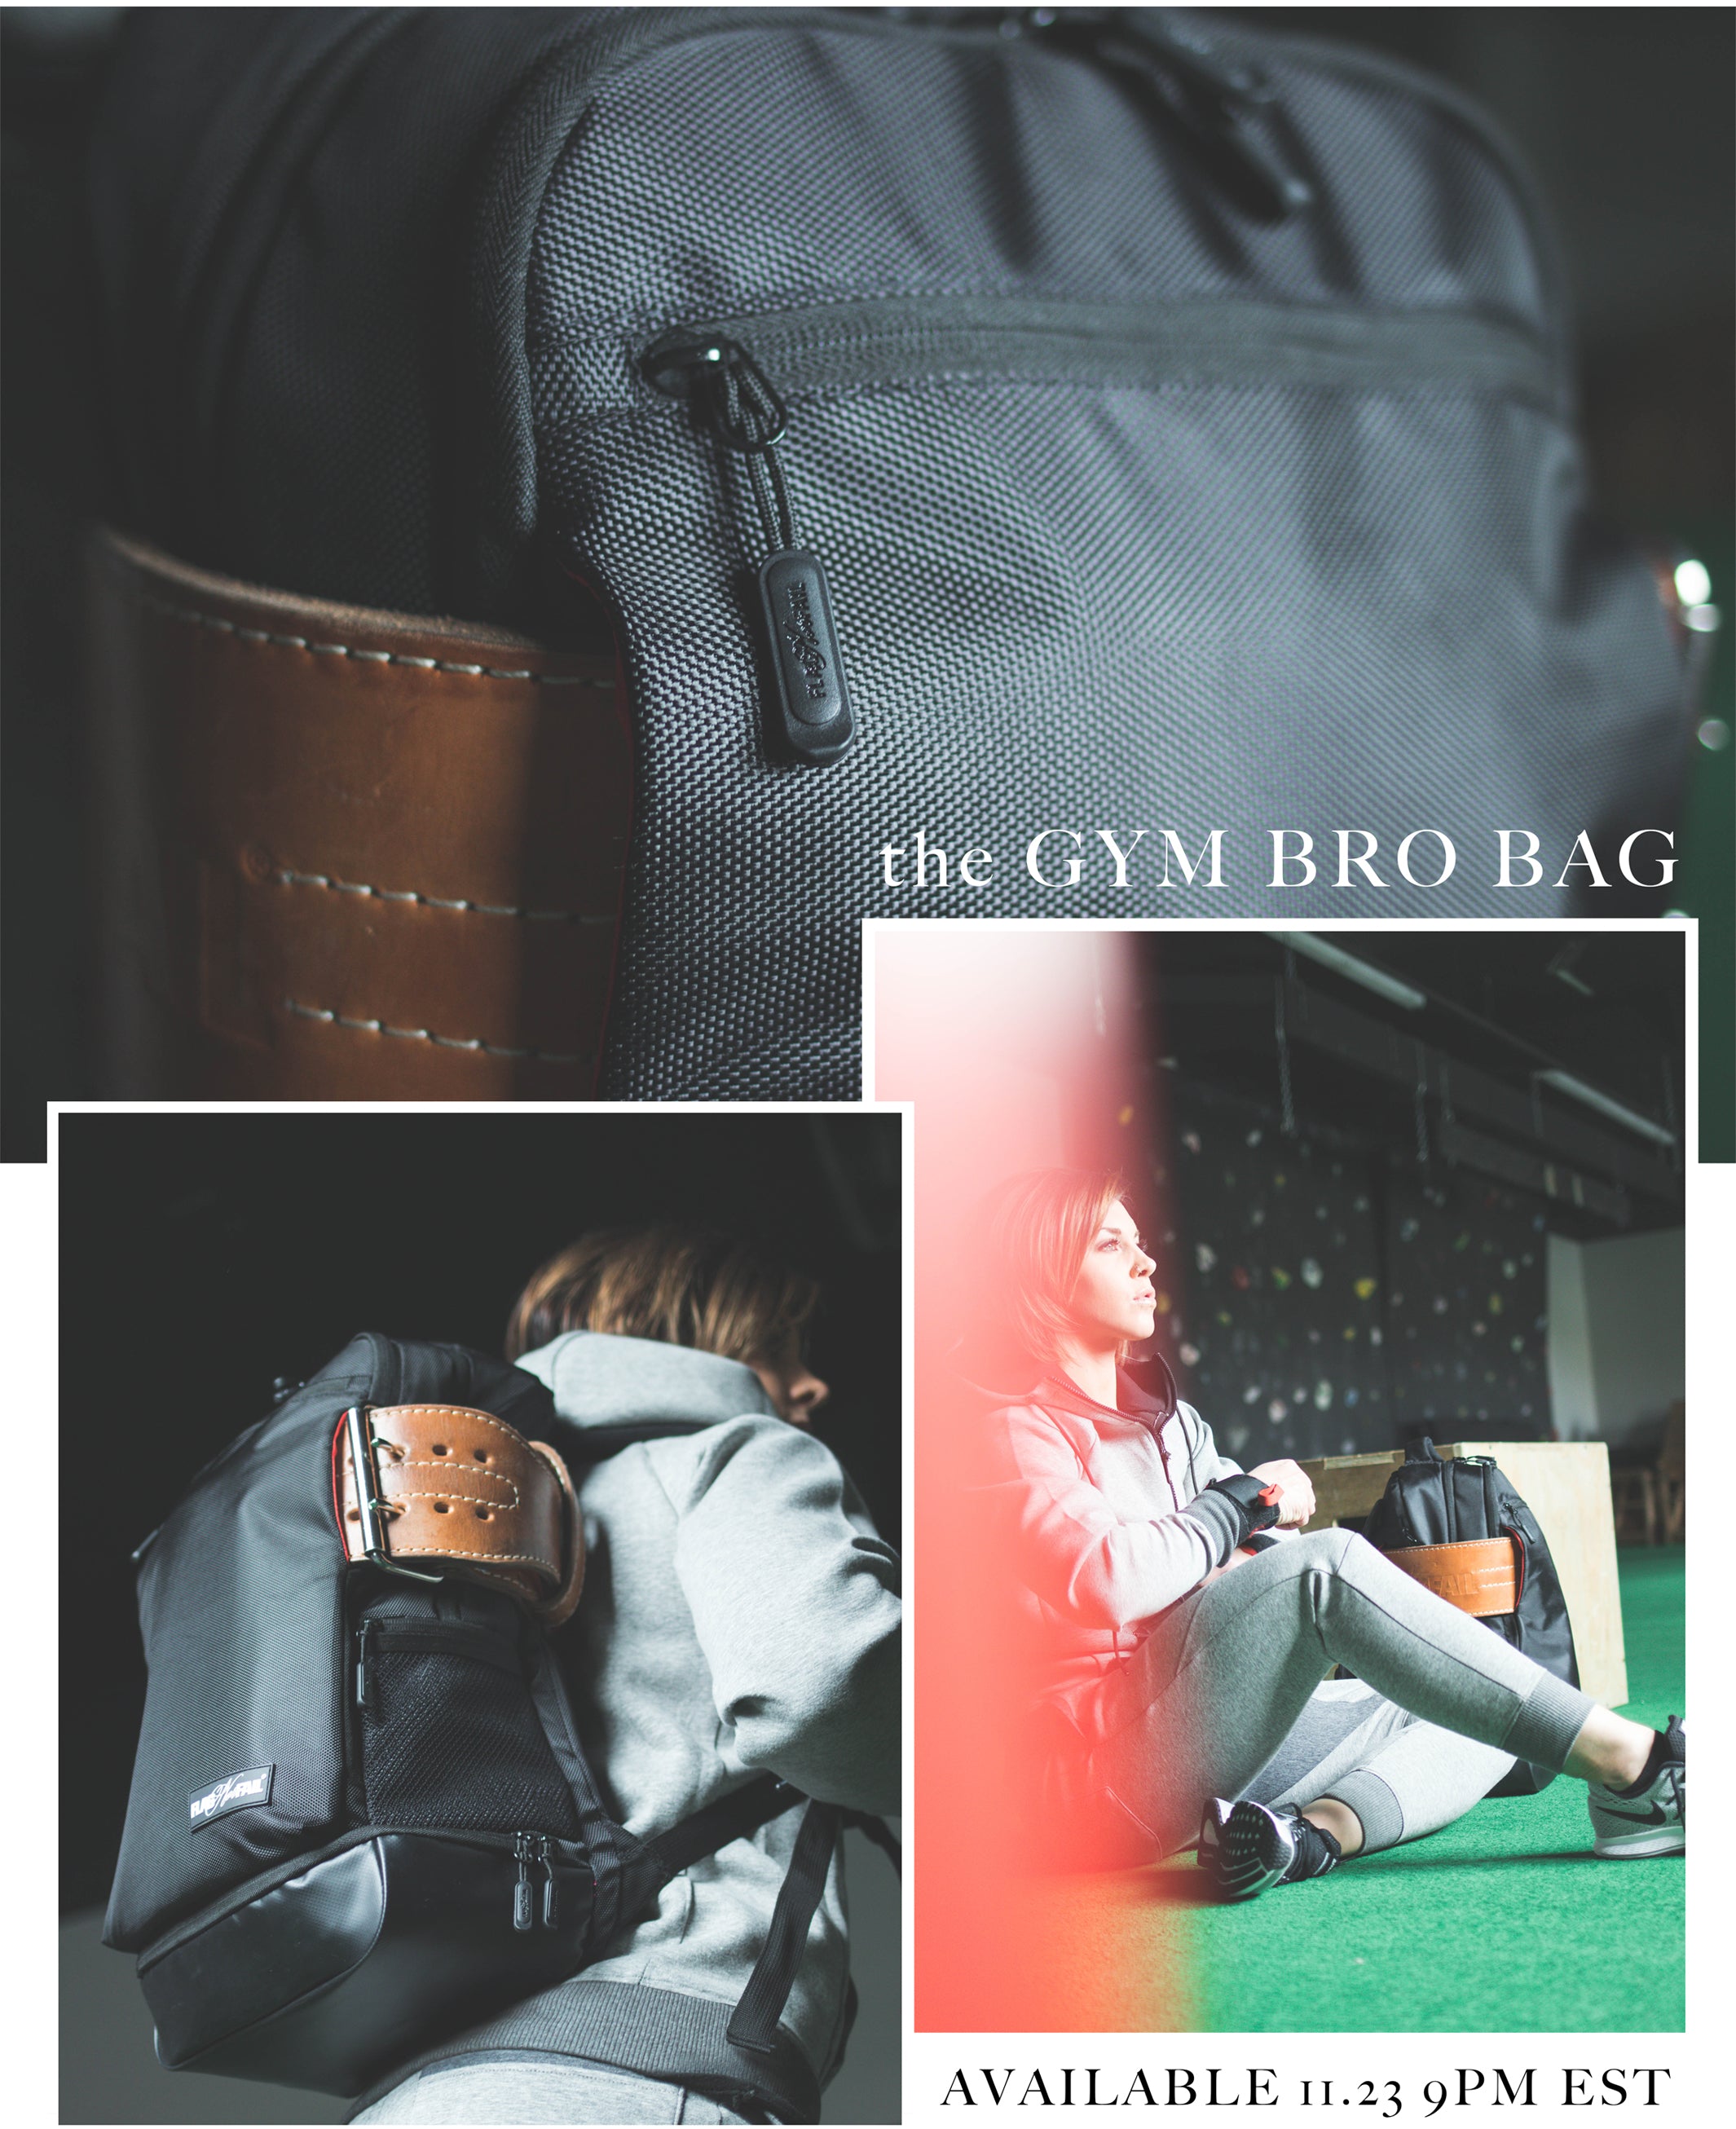 Best Gym Bag With Lifting Belt Holder